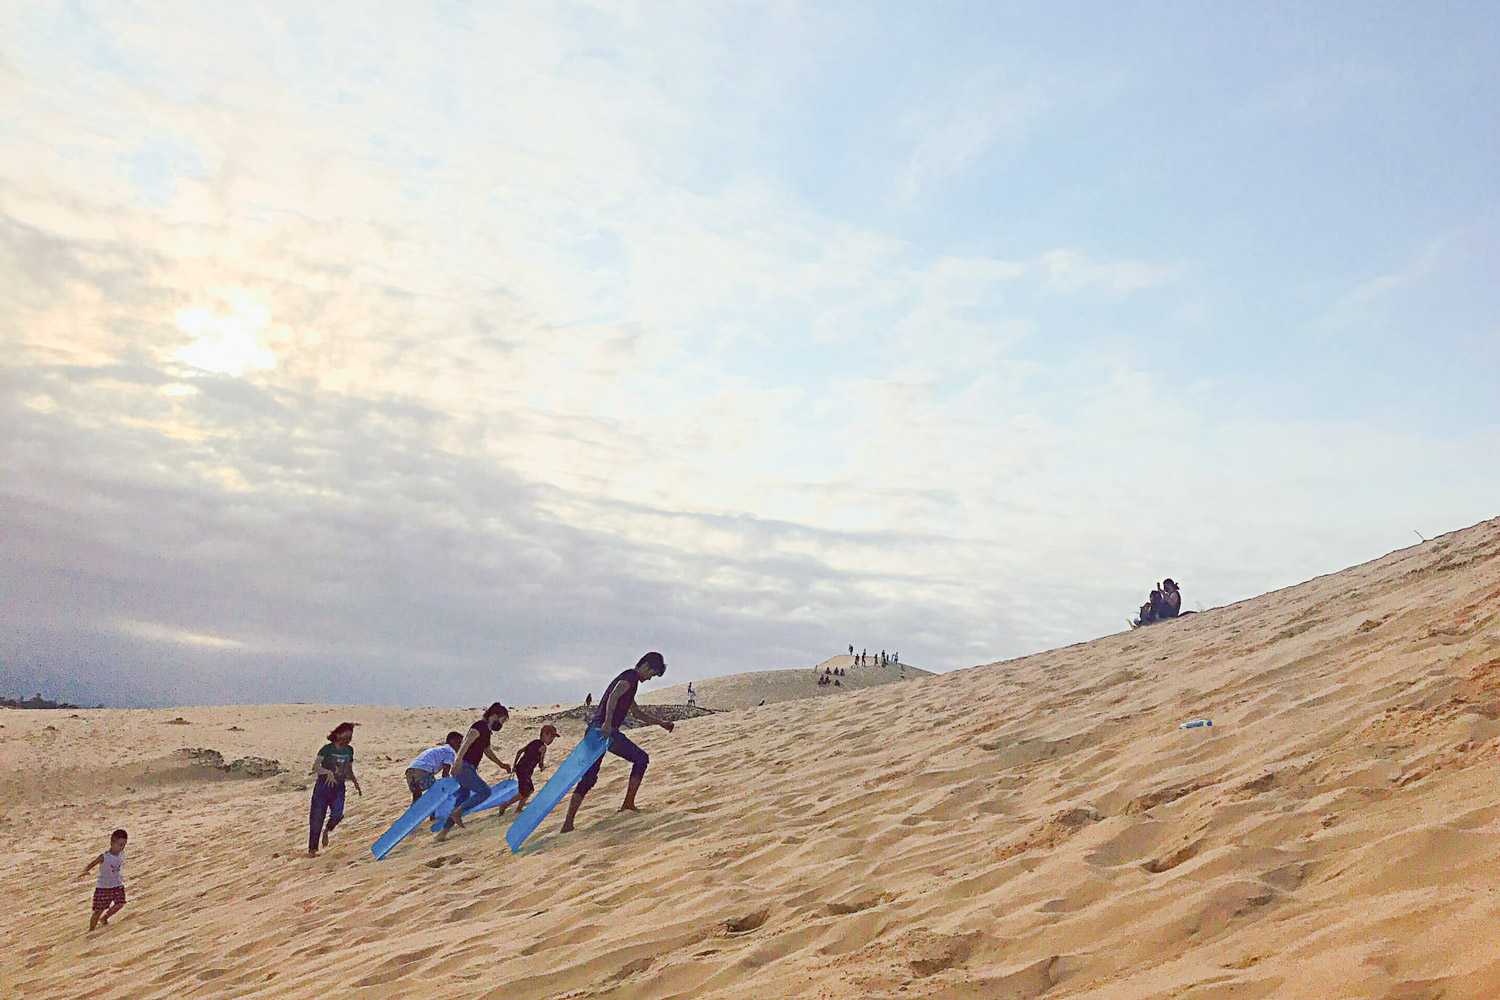 Hoạt động trượt cát thú vị không nên bỏ qua khi đến đồi cát Quang Phú.